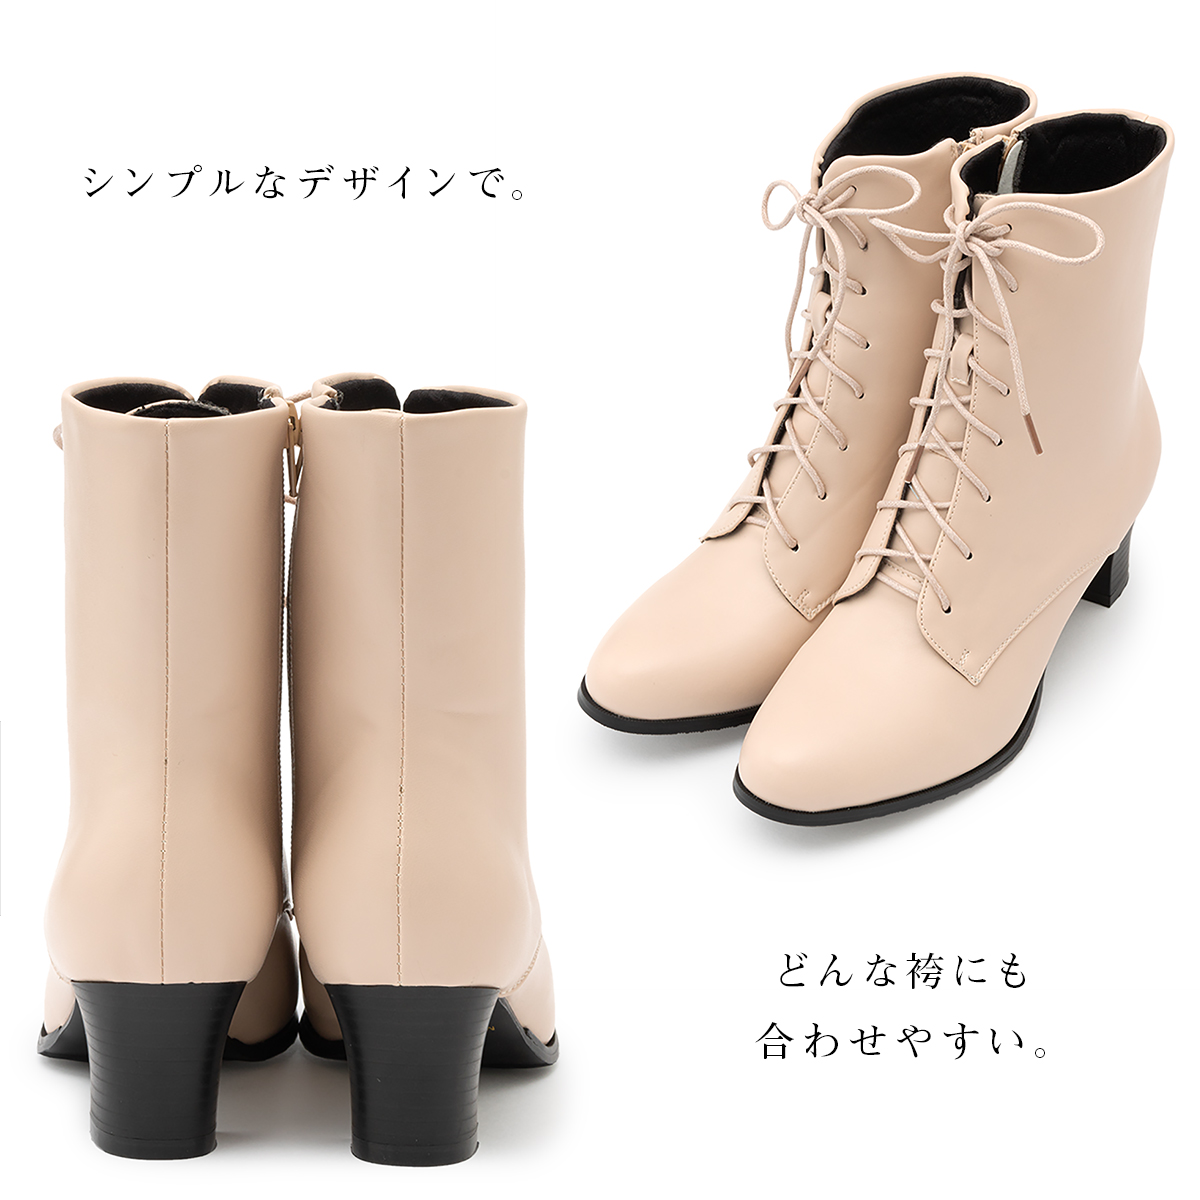 ブーツ 靴 カジュアル ショートブーツ レディース 履物 袴用| きもの館